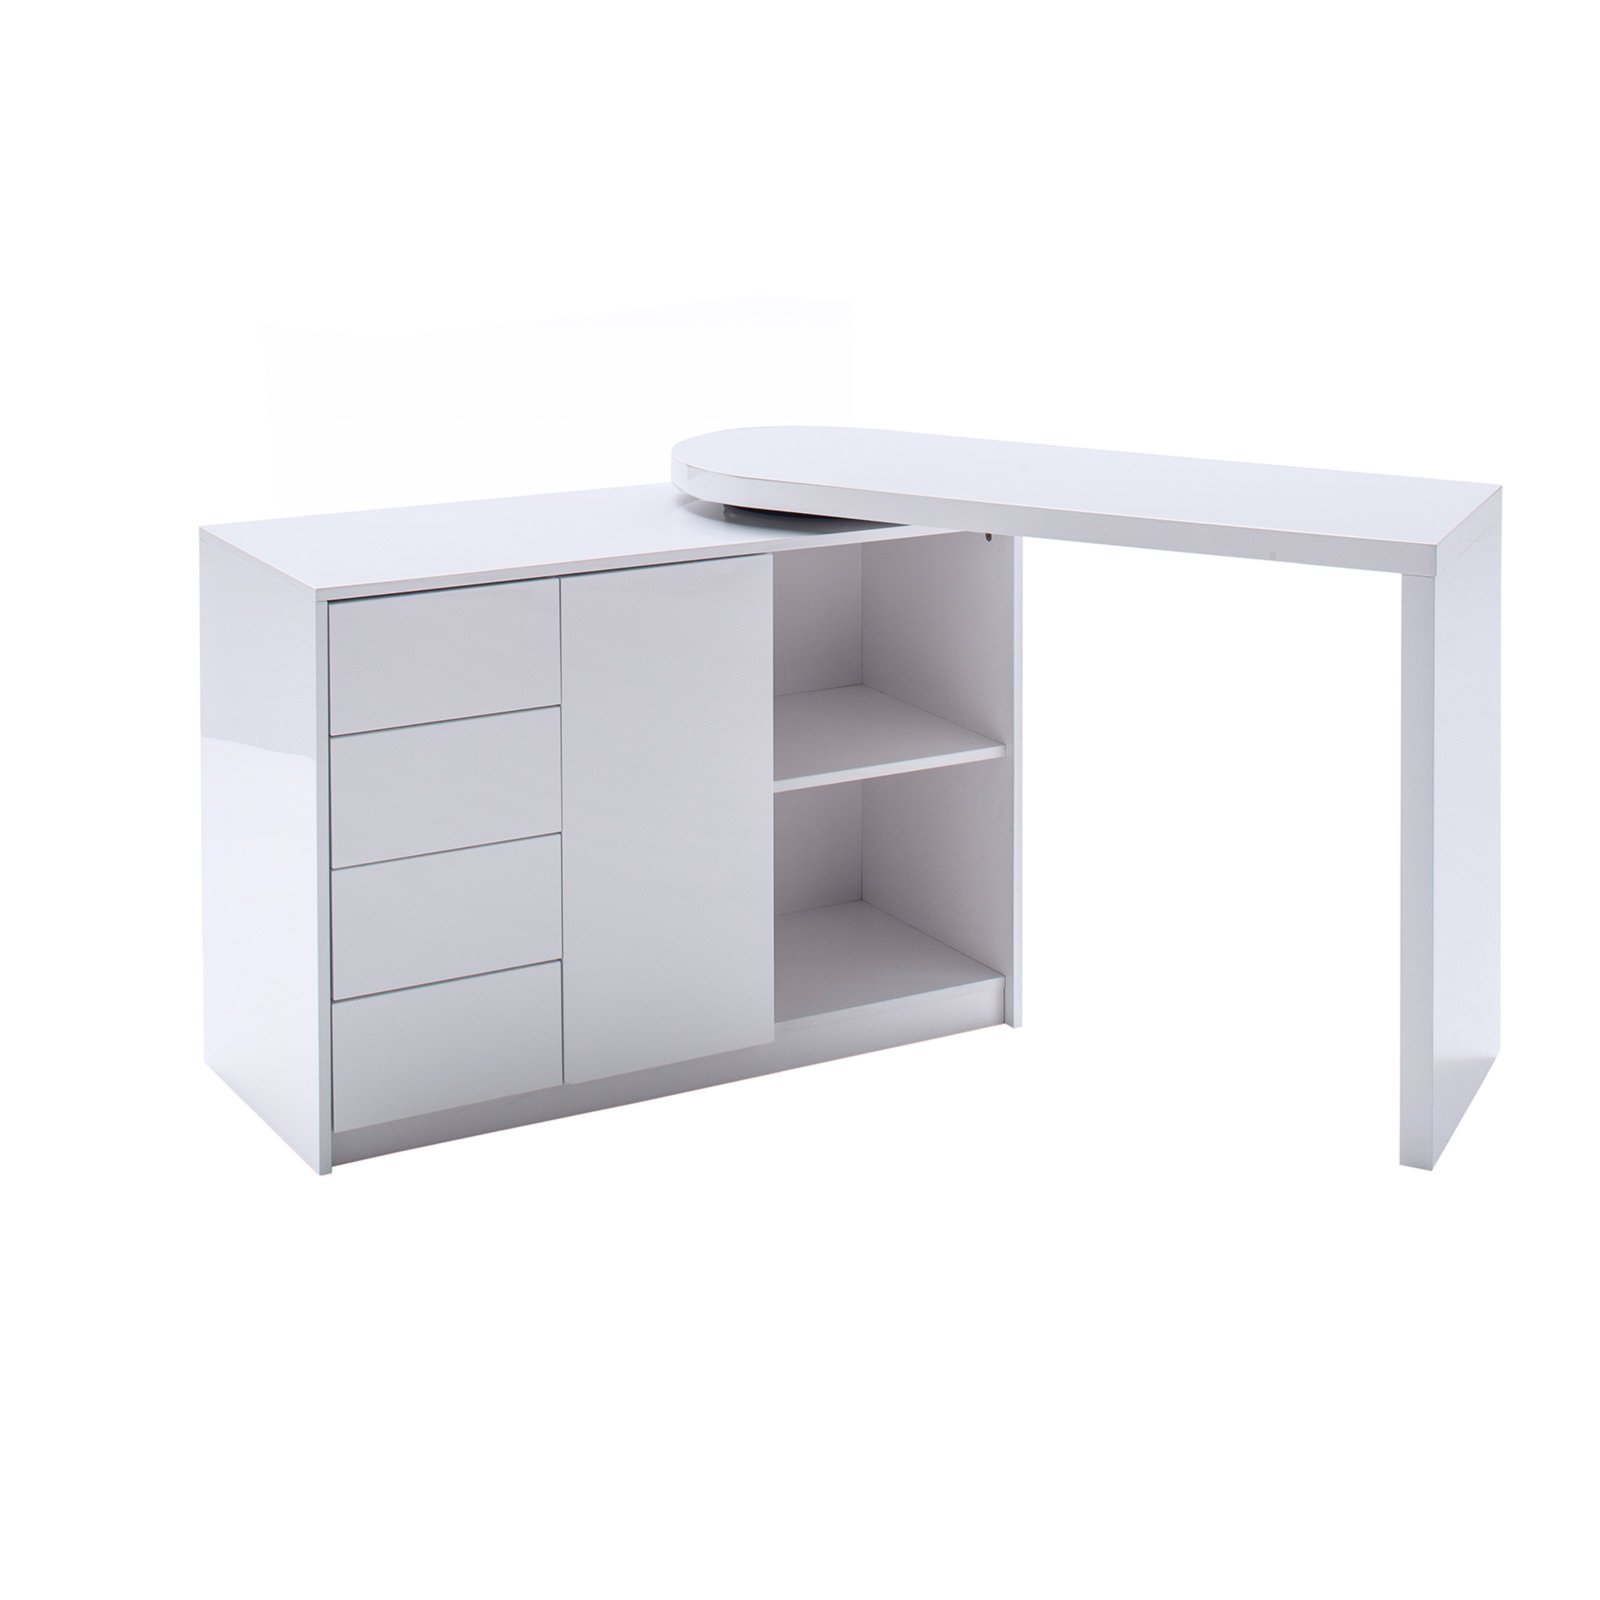 Schreibtisch - weiß - hochglanz - schwenkbar | Online bei ROLLER kaufen